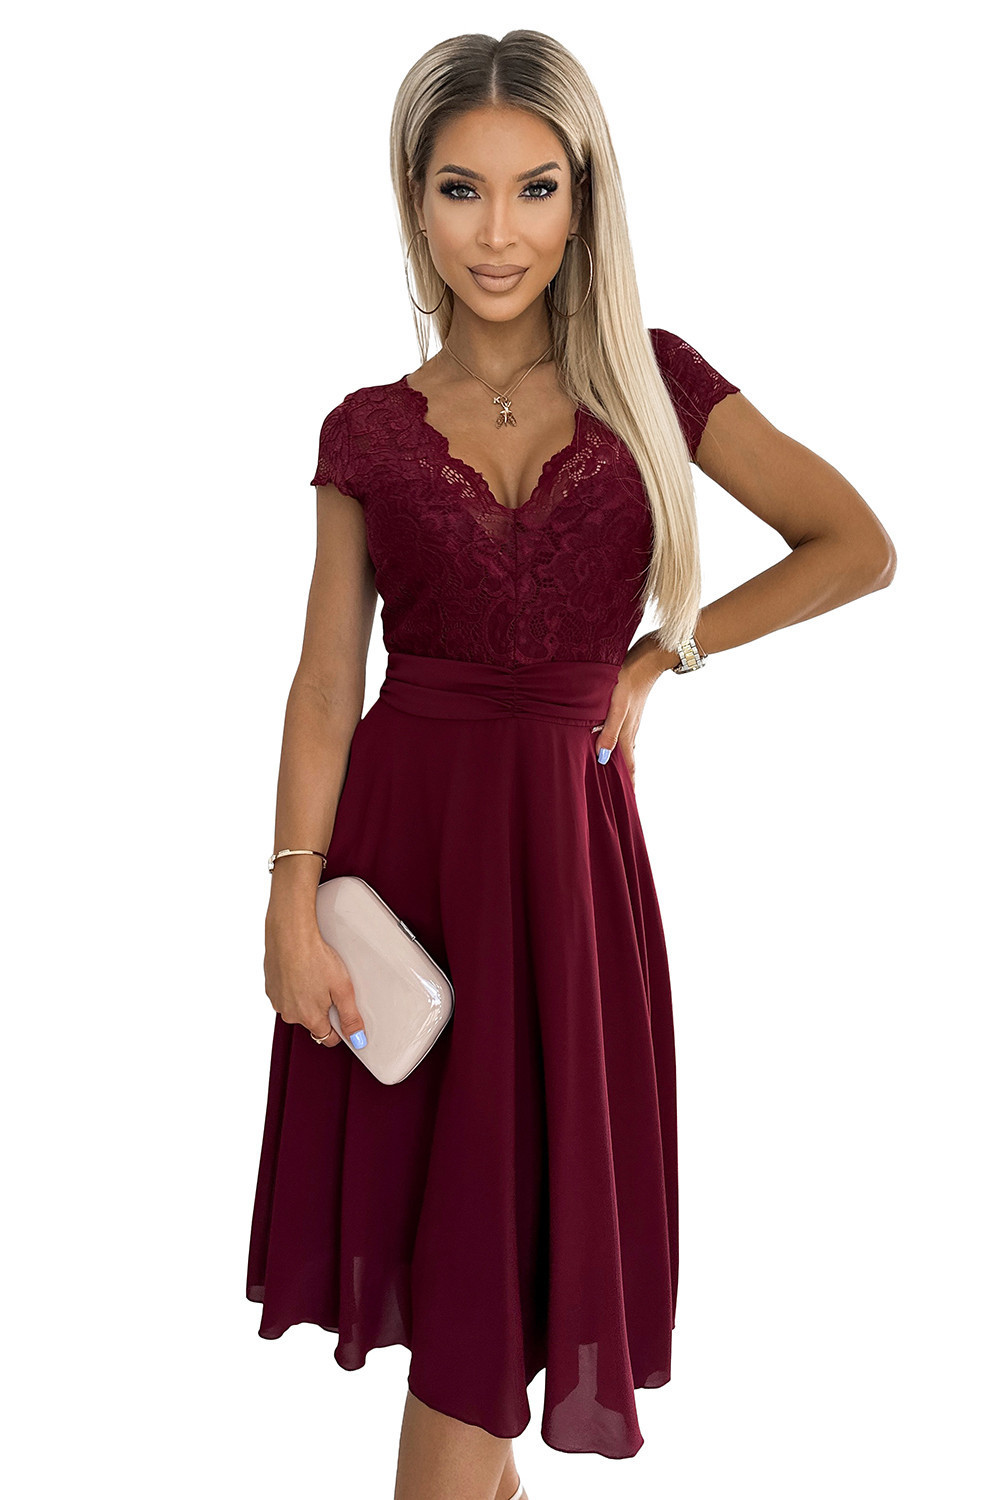 LINDA - Dámské šifonové šaty ve vínové bordó barvě s krajkovým výstřihem 381-5 M